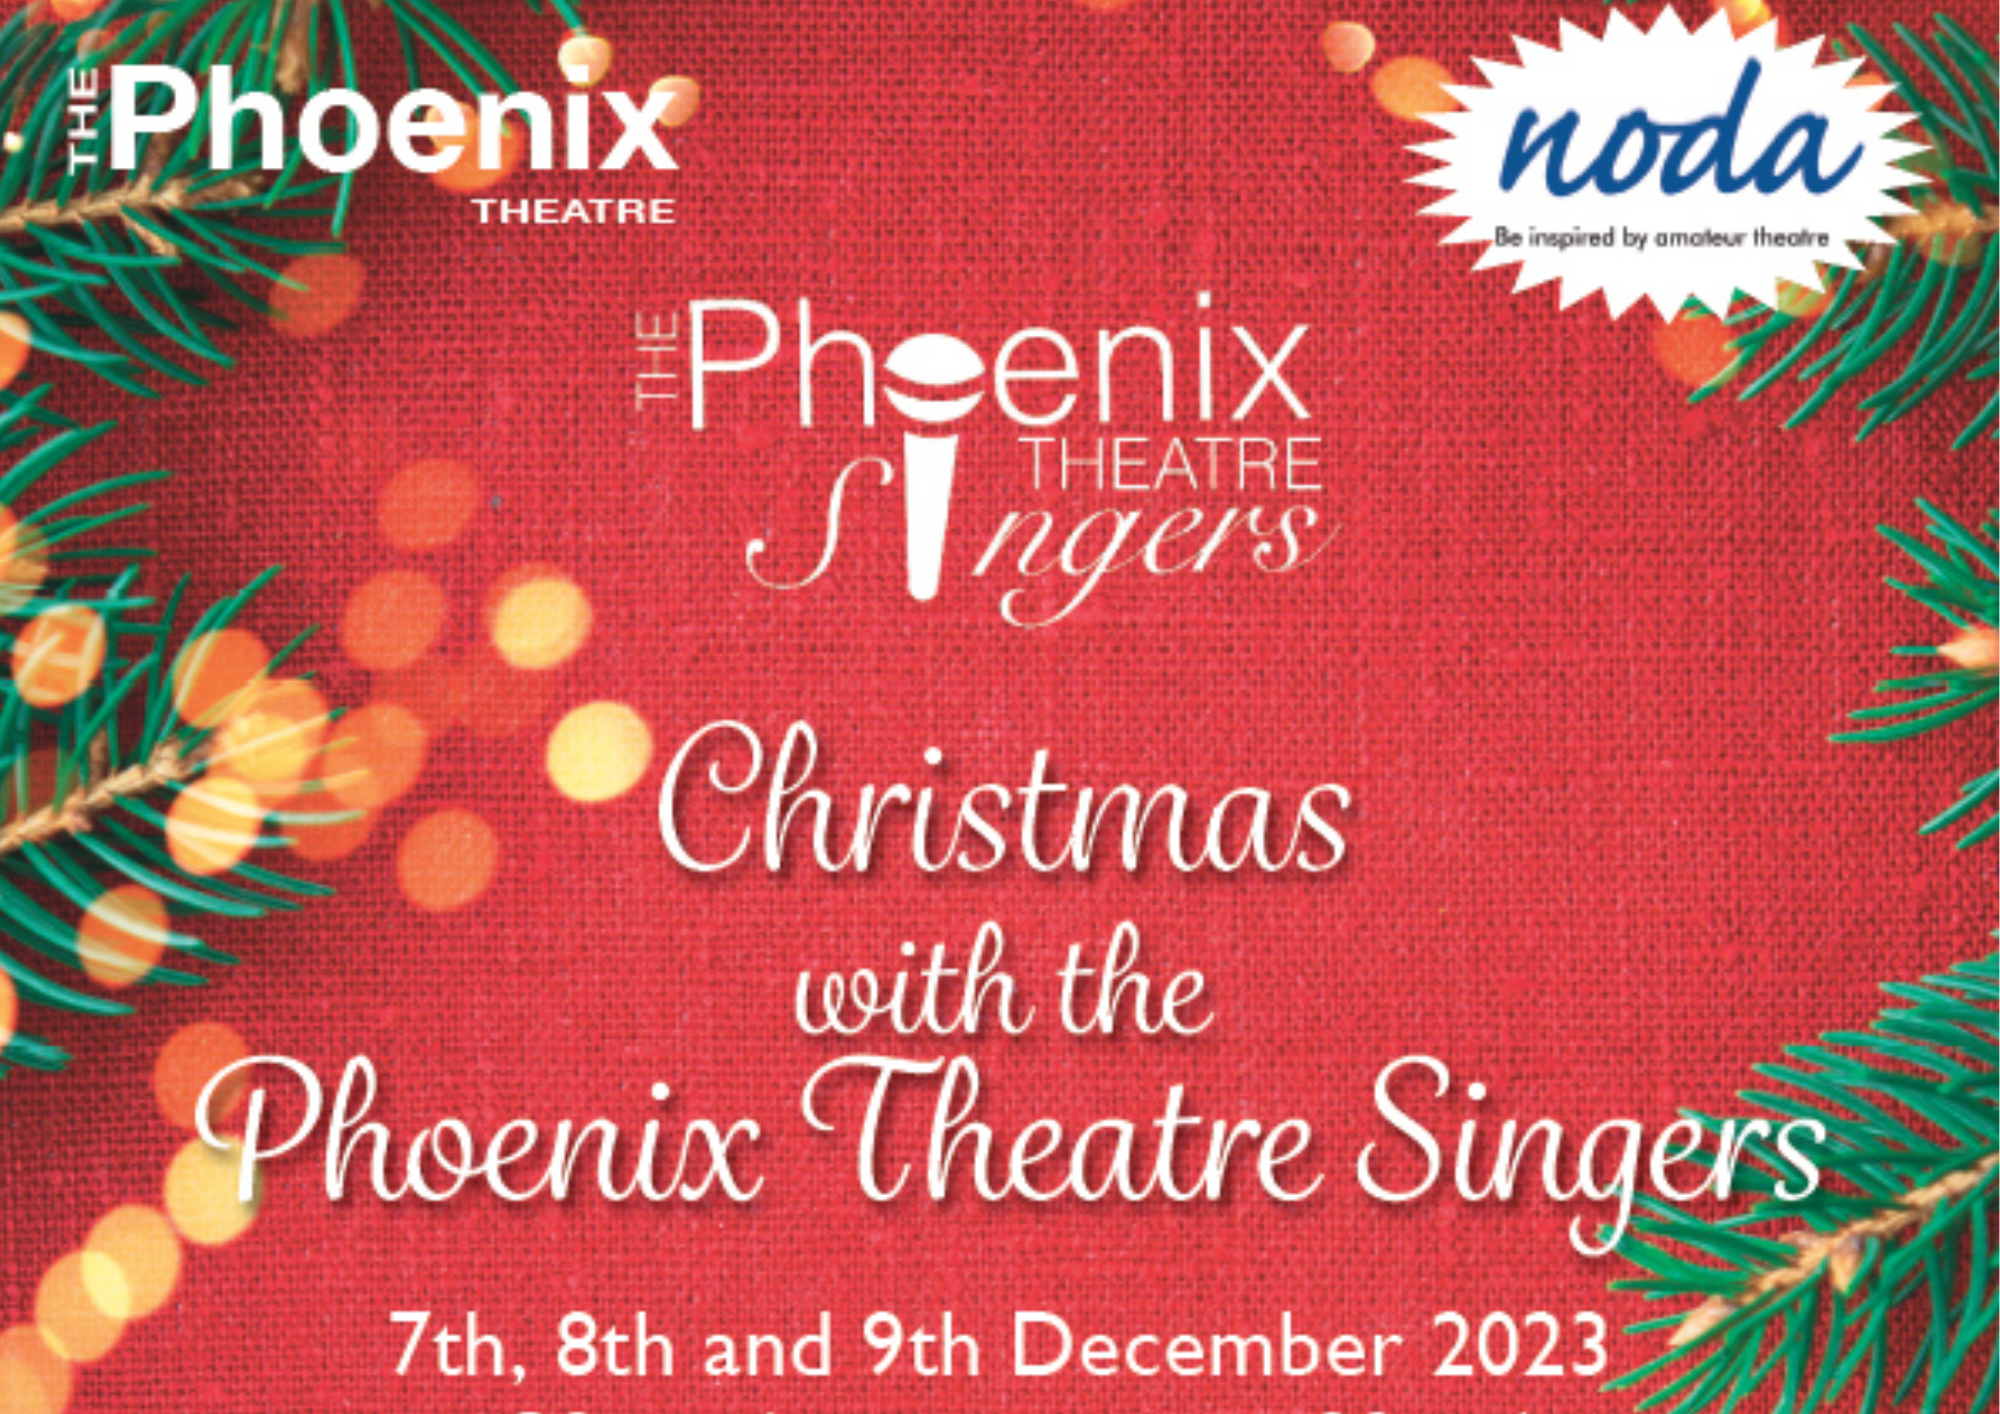 The Phoenix Theatre poster